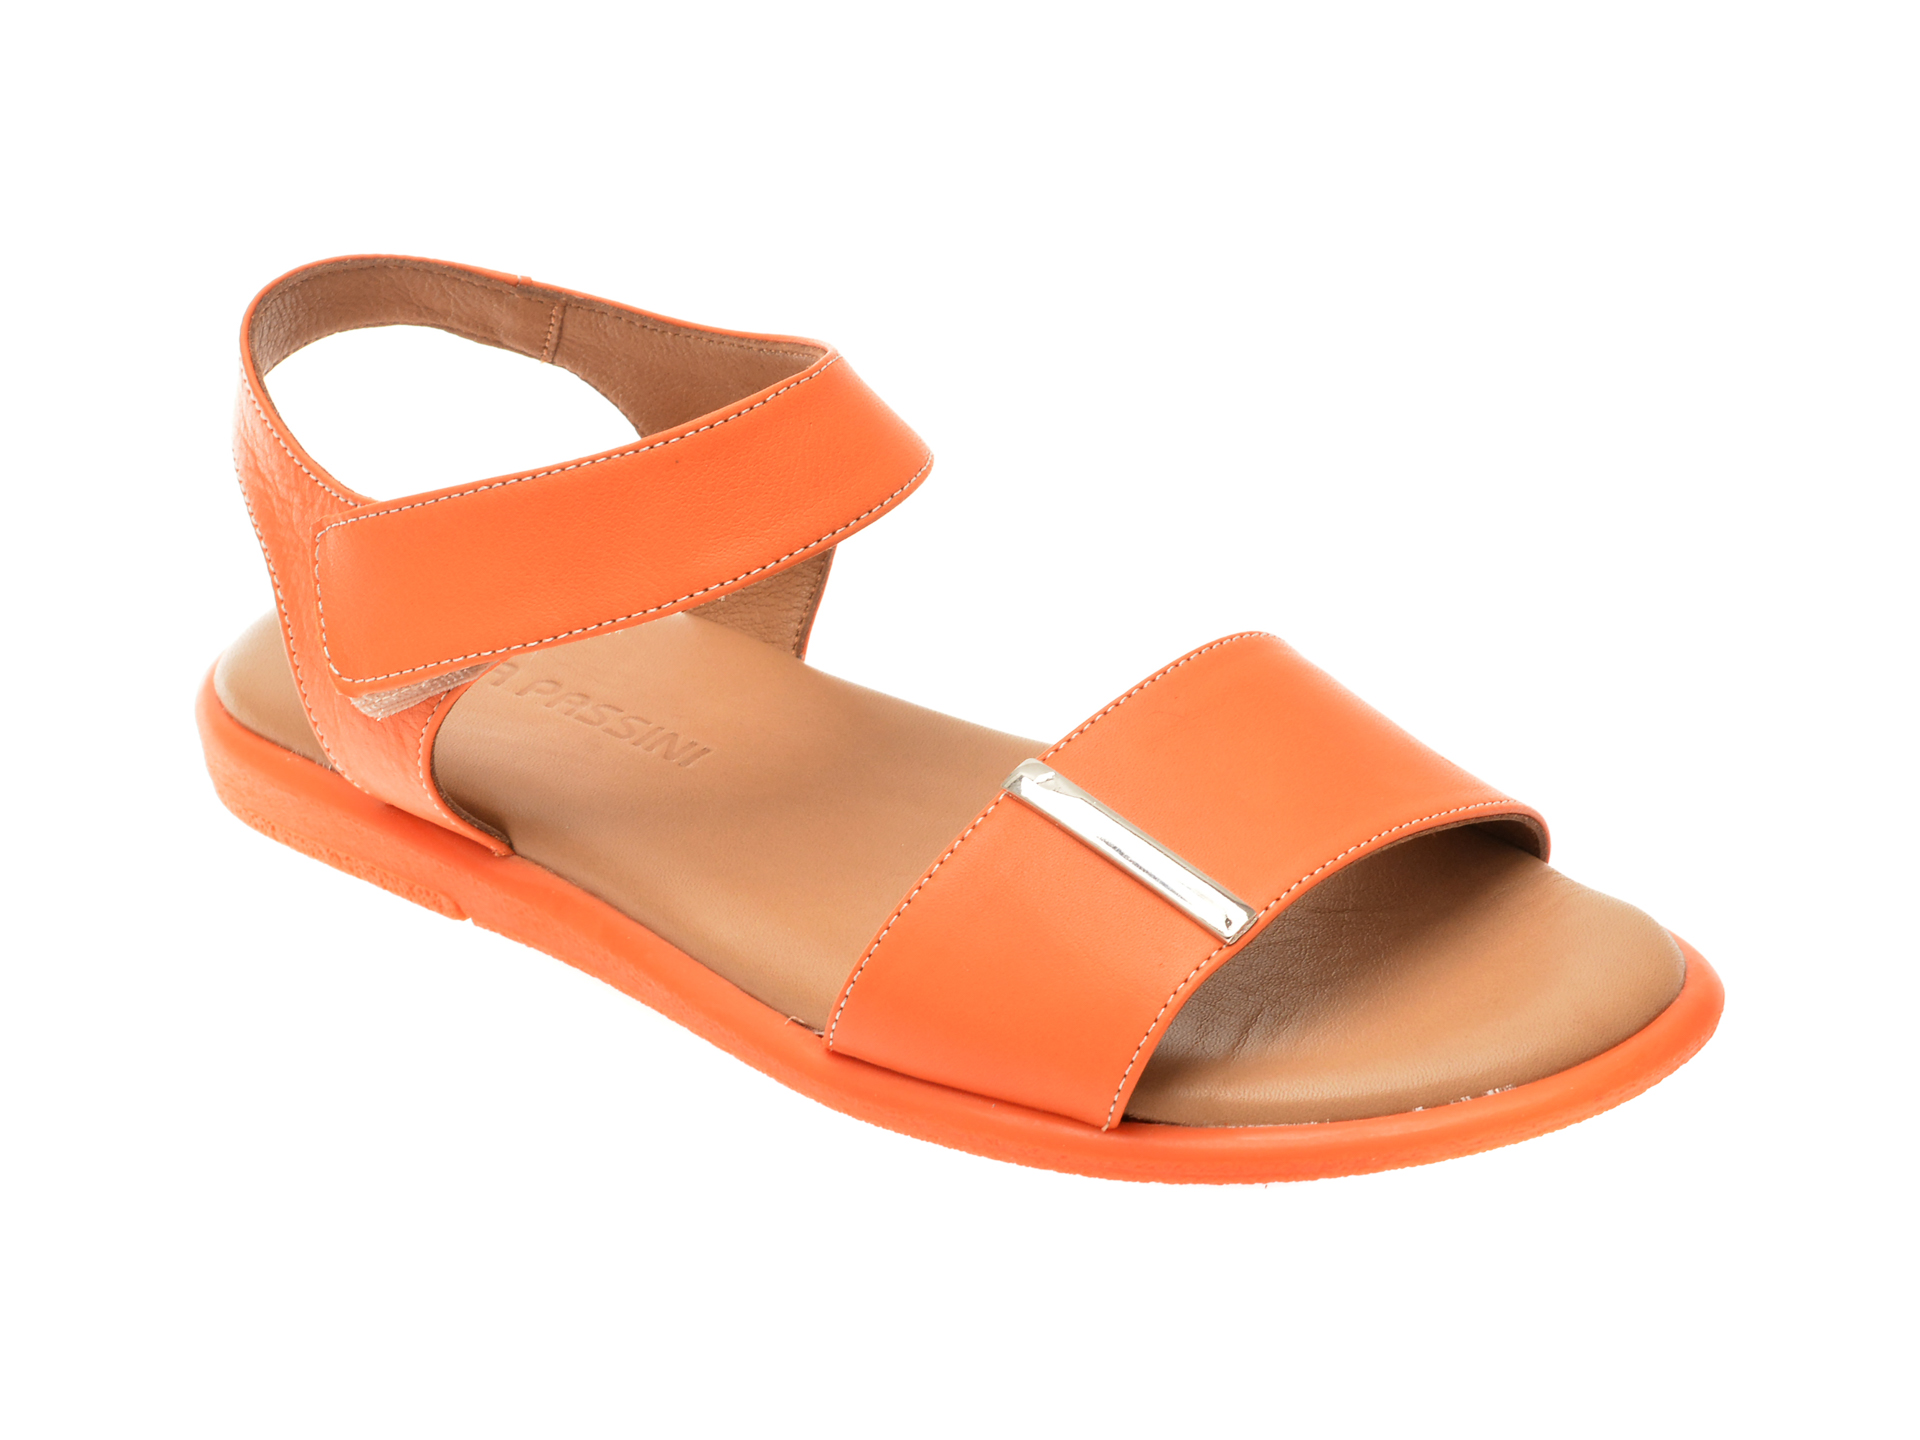 Sandale casual FLAVIA PASSINI portocalii, 883901, din piele naturala